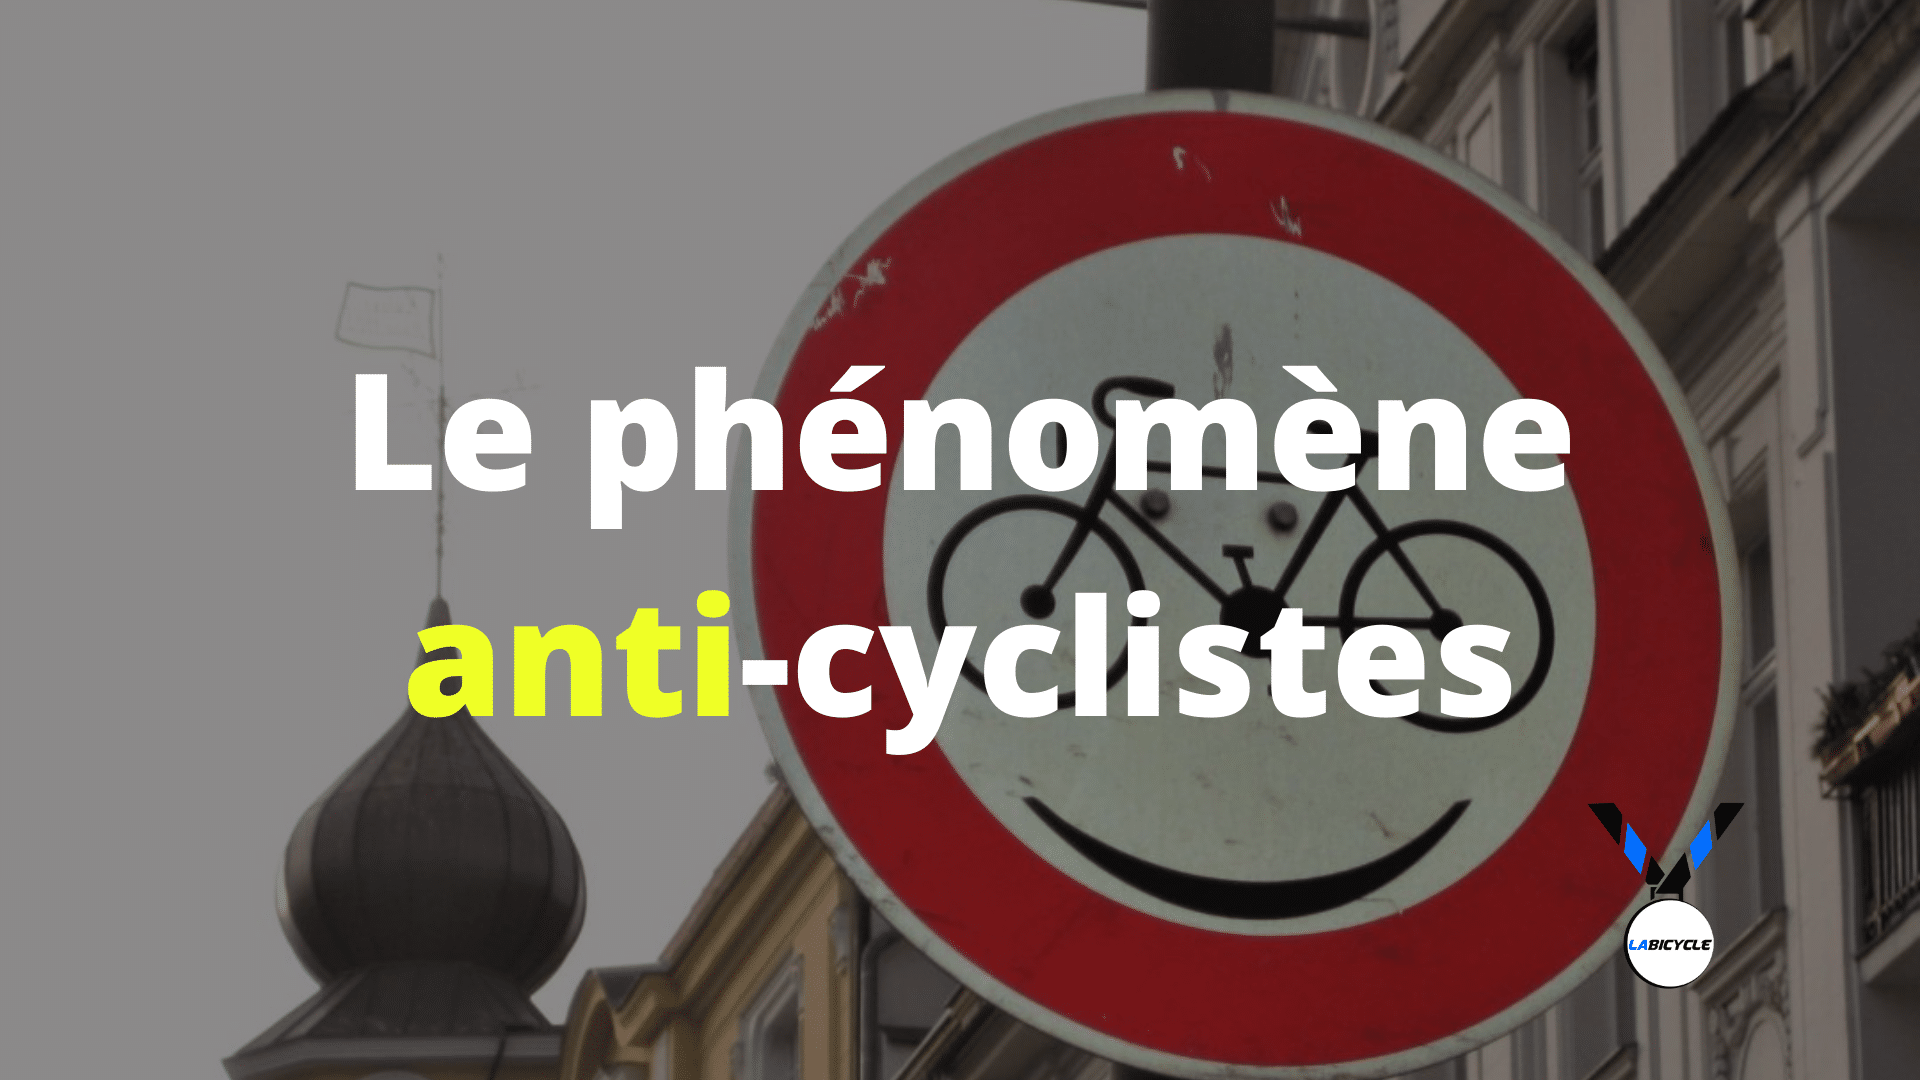 Ce que tout le monde devrait savoir sur les anti-cyclistes